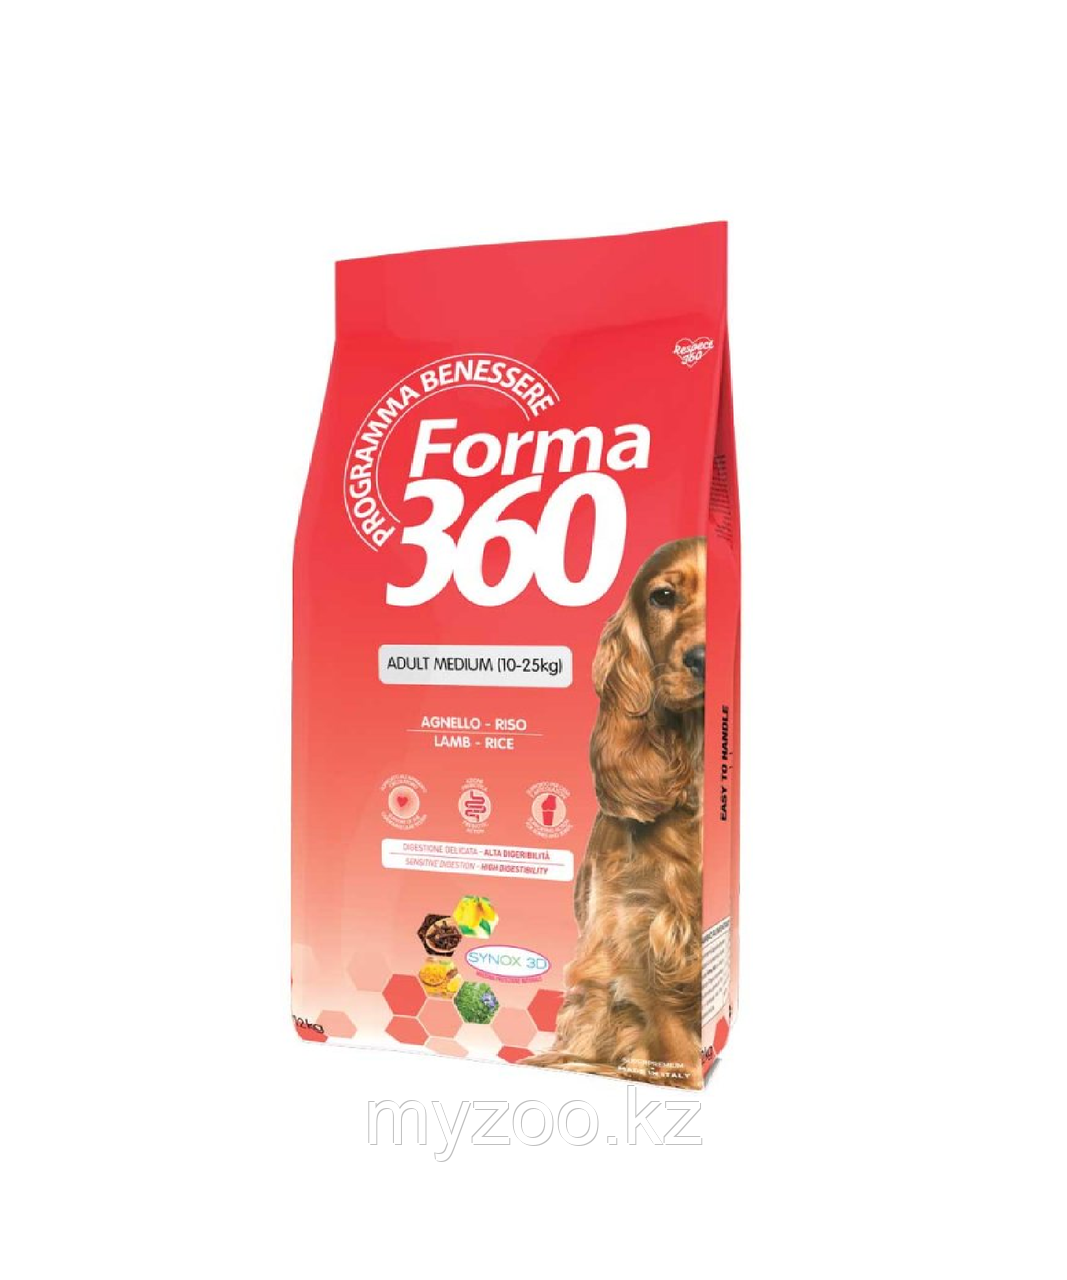 Forma 360  Medium  Adult для собак средних пород,ягненок/рис,12кг